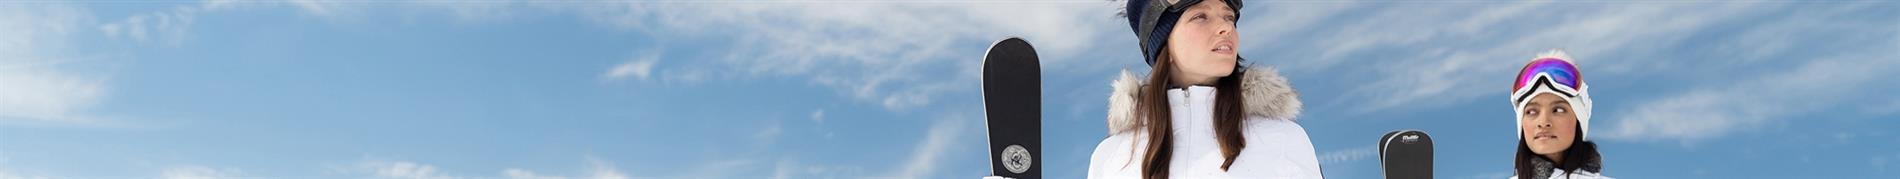 Volkl High-Performance Skis for Women 